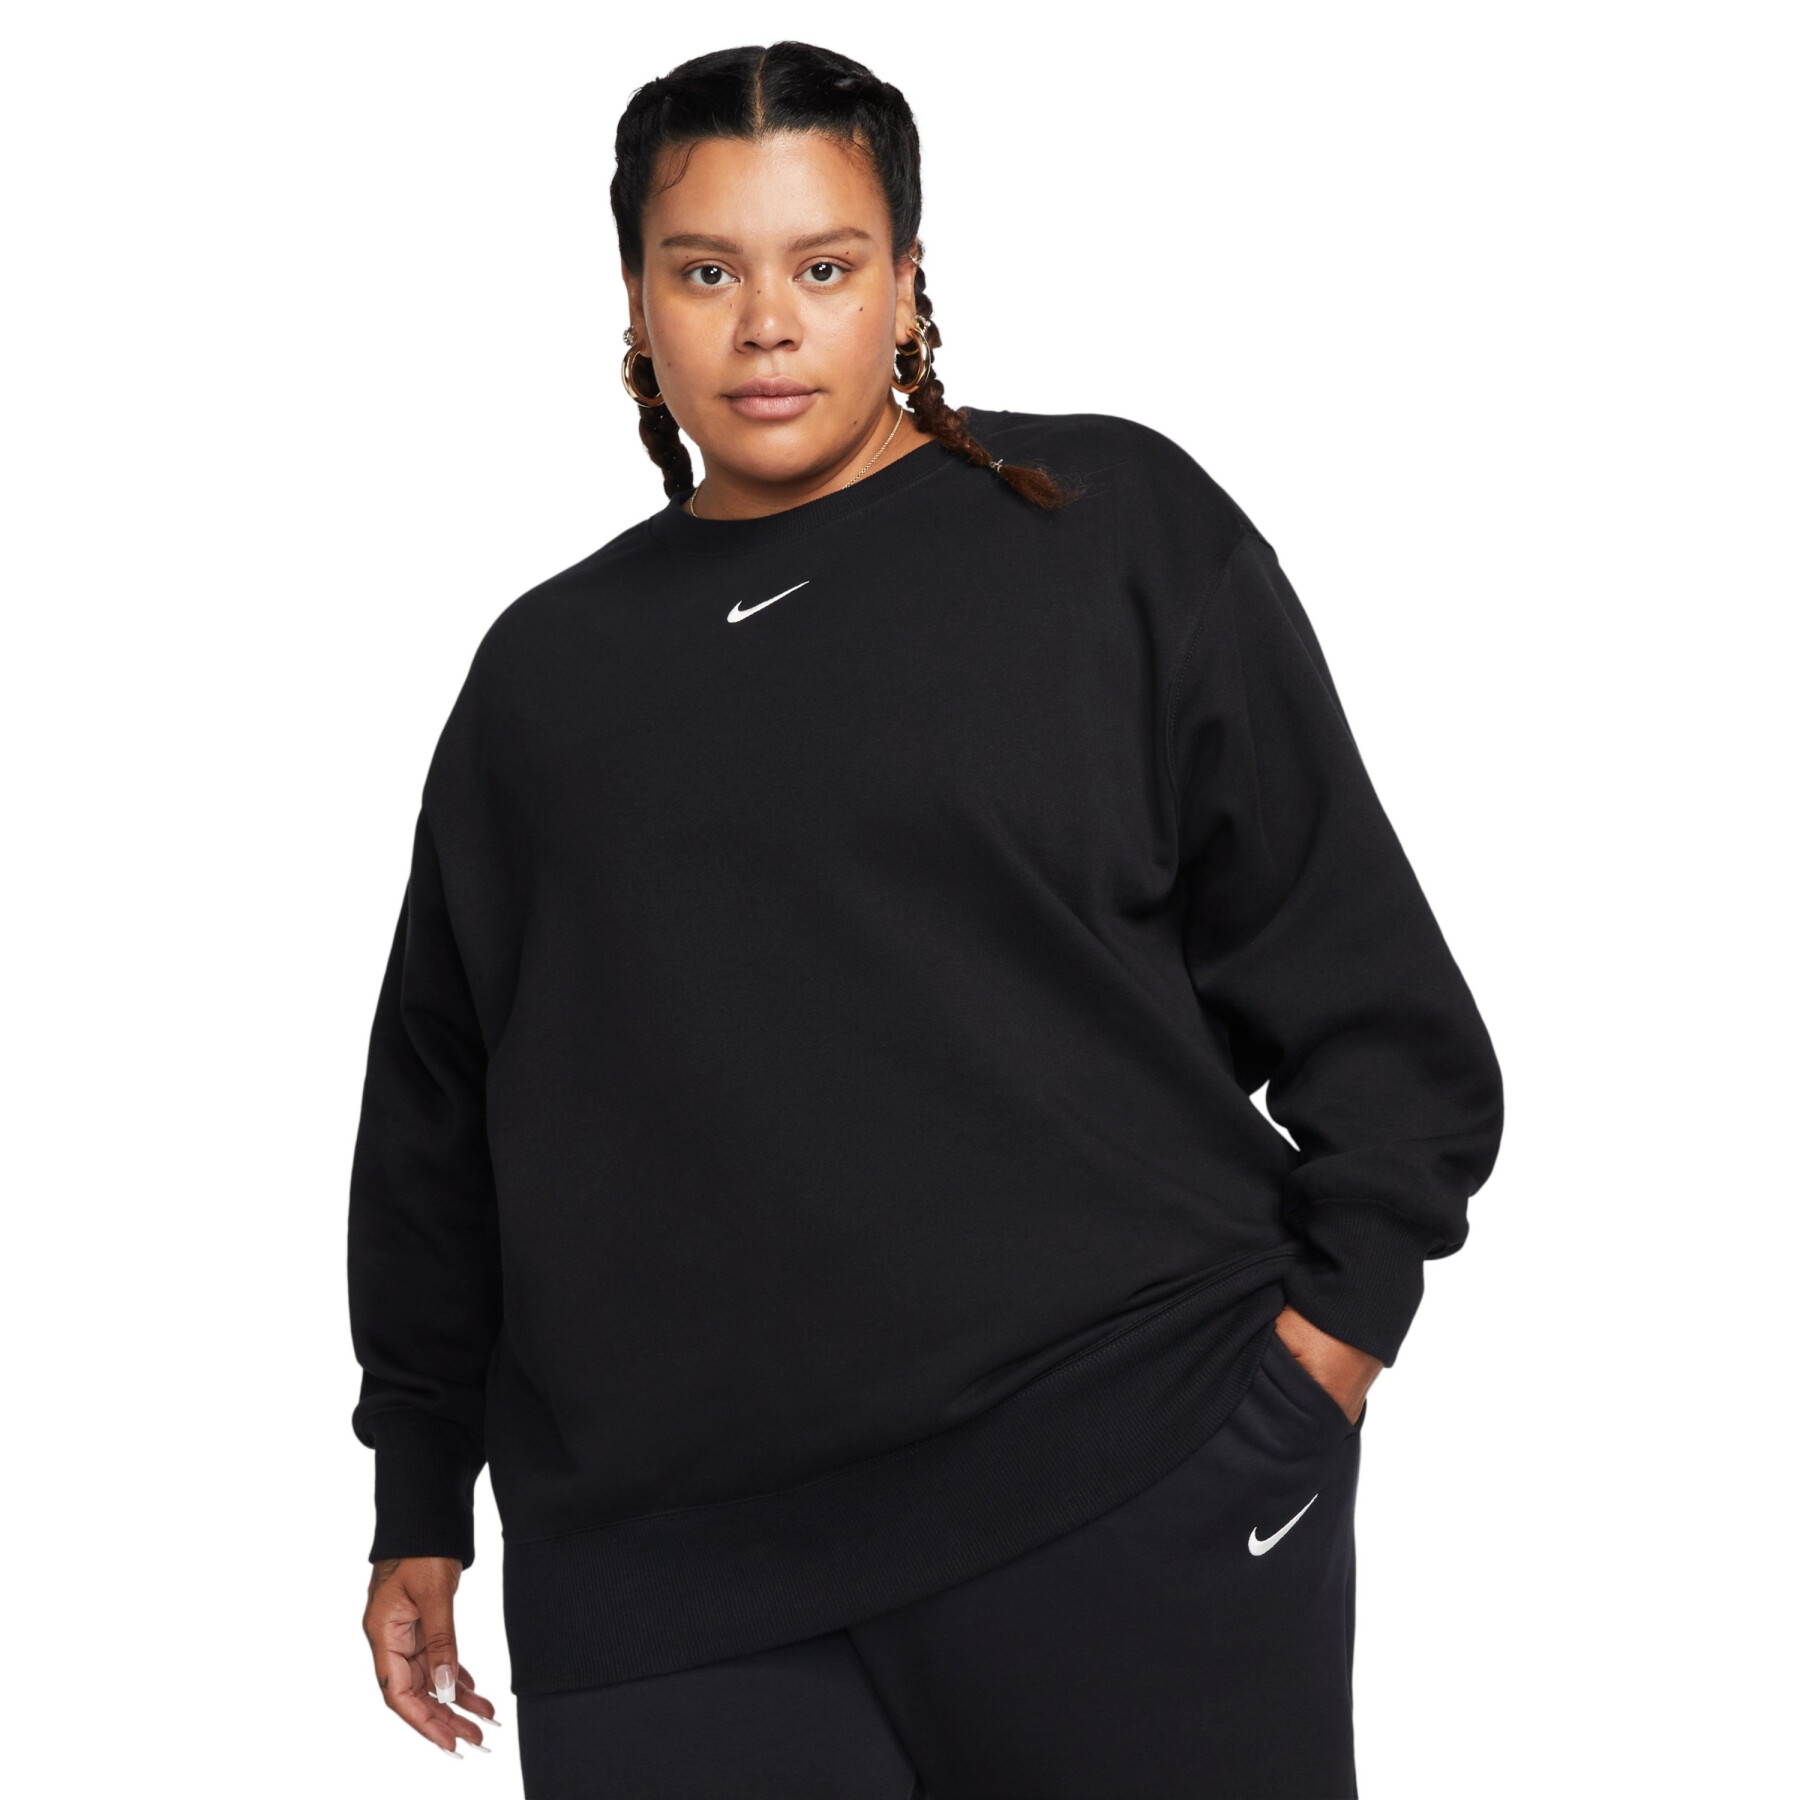 Women's oversized sweatshirt Nike Phoenix Fleece